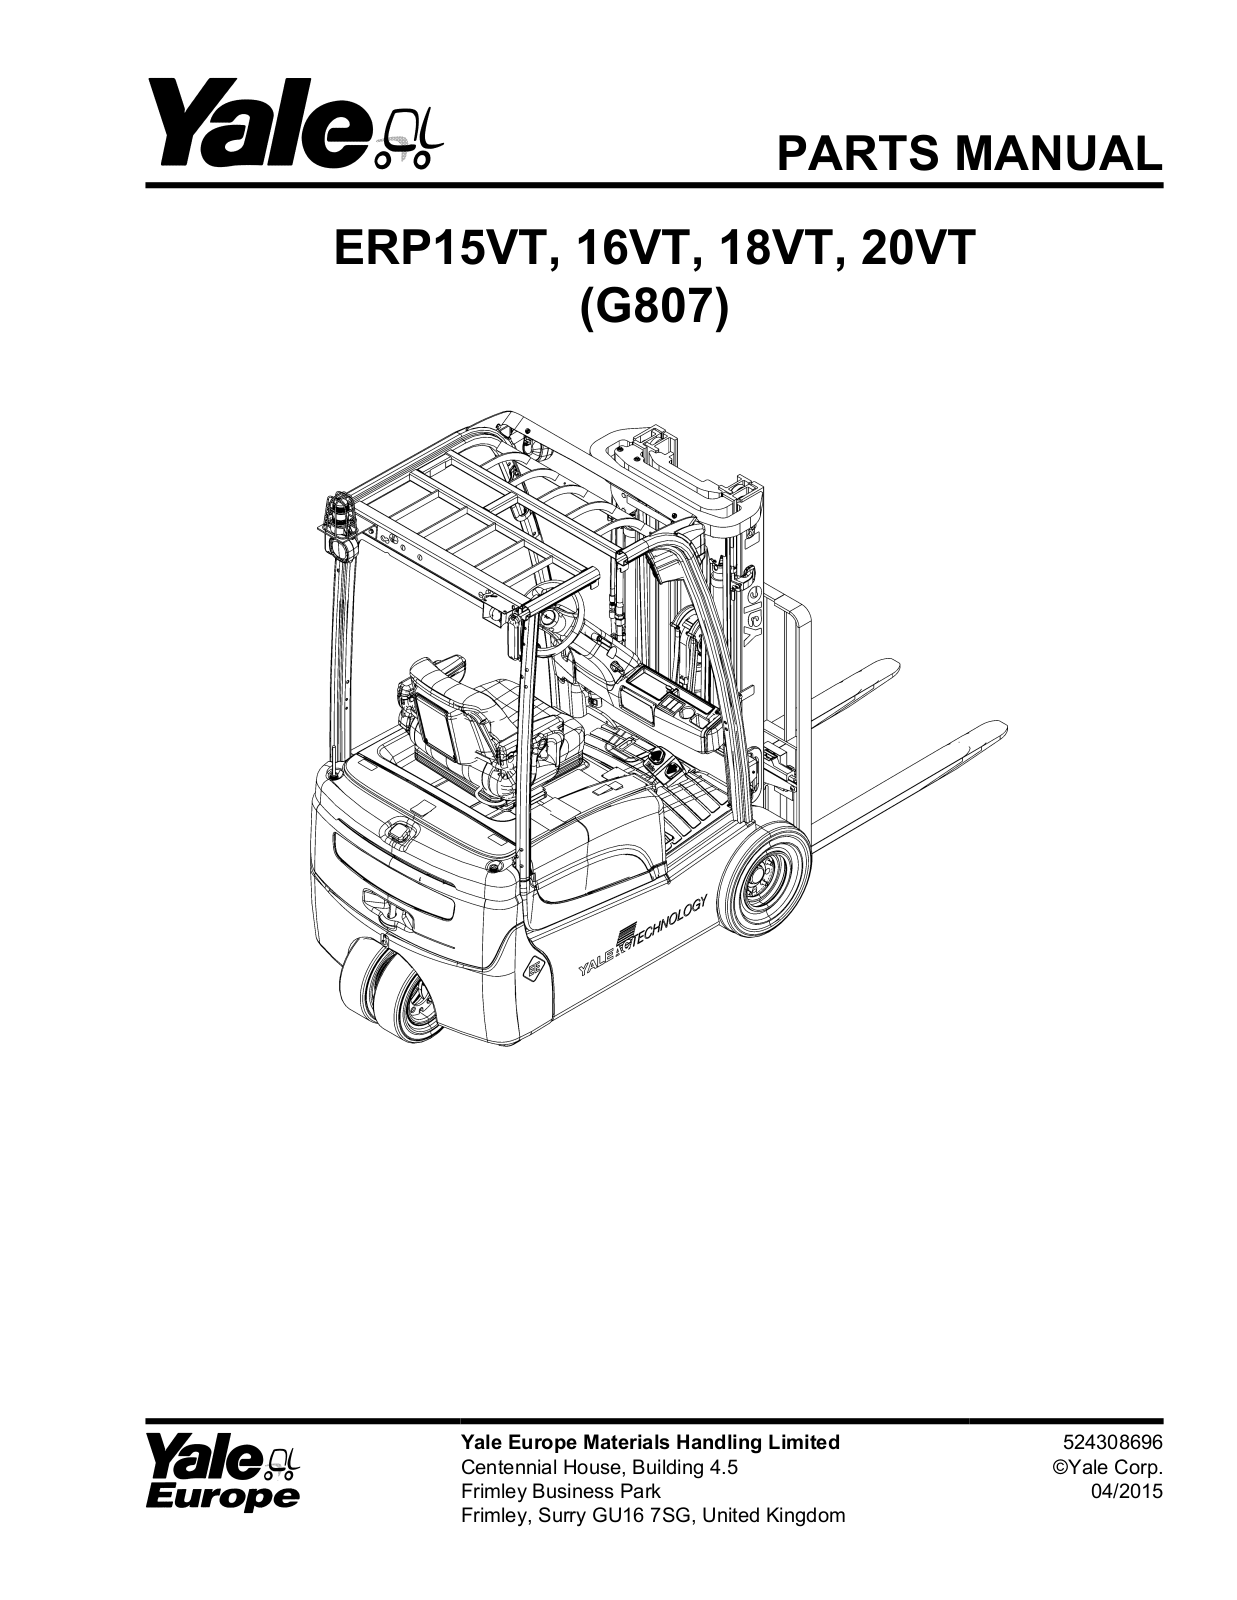 Yale ERP15VT, ERP16VT, ERP18VT, ERP20VT Parts Manual